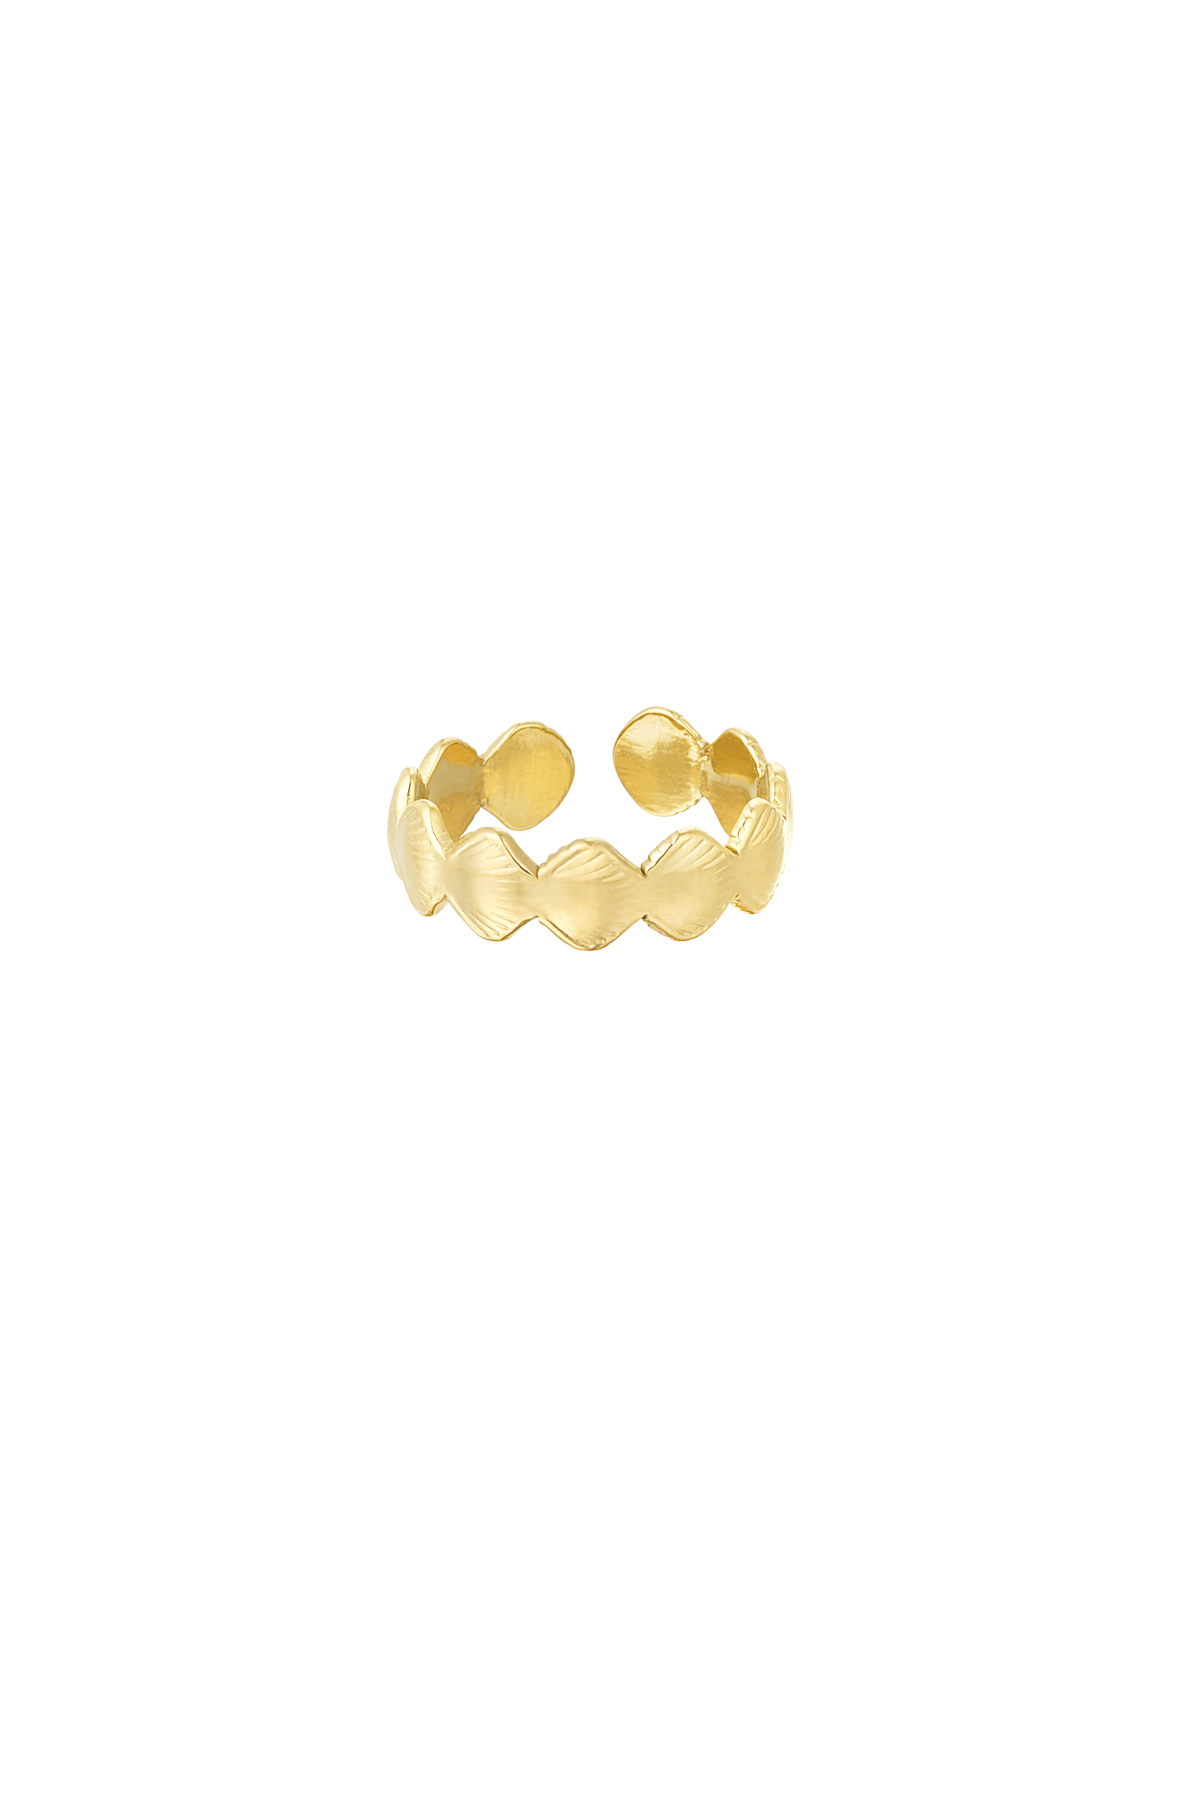 Ring Muschelseele - gold